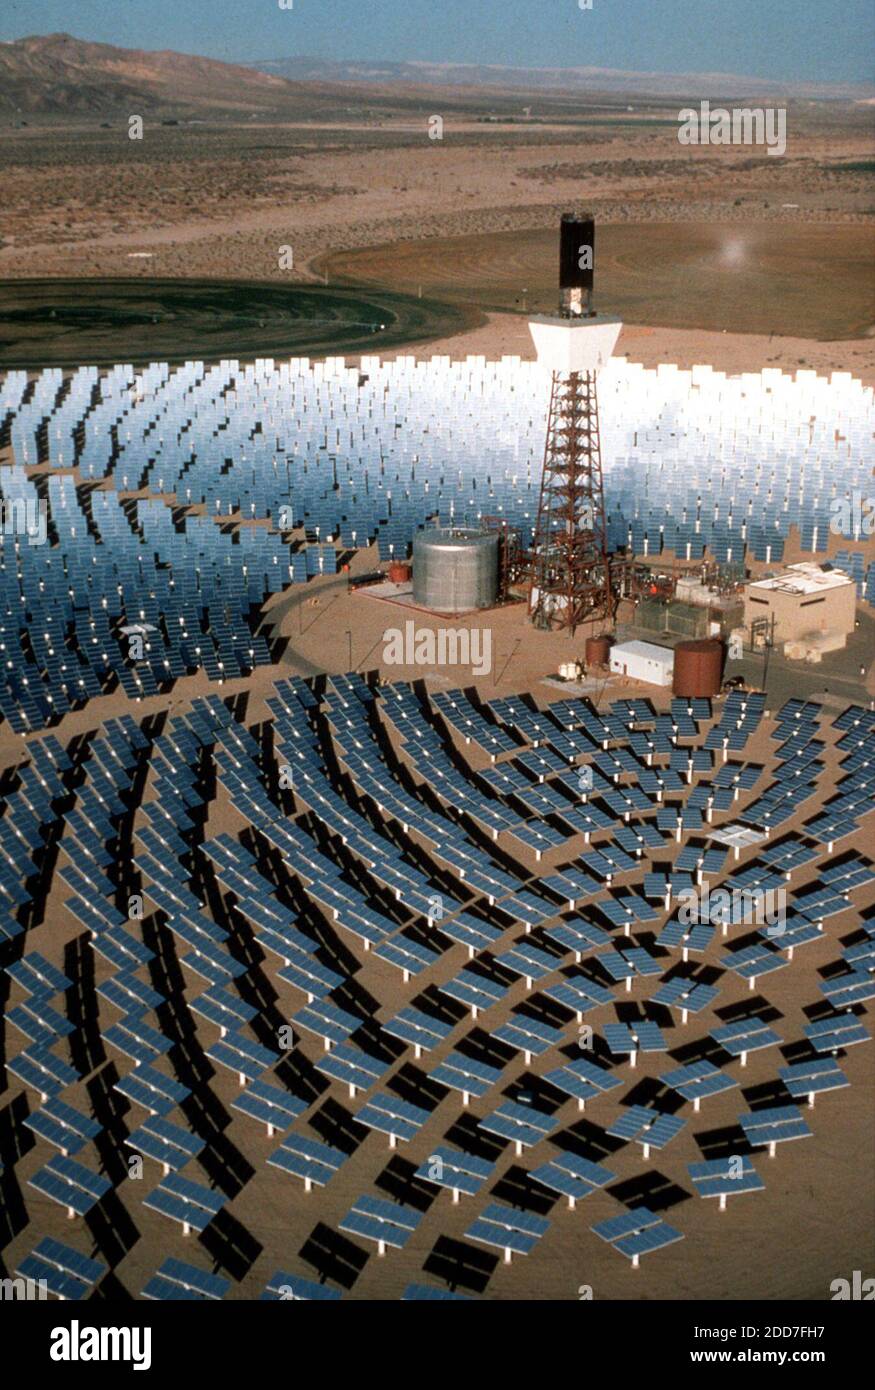 KEIN FILM, KEIN VIDEO, KEIN Fernsehen, KEINE DOKUMENTATION - Solar Two, eines der modernsten Solarkraftwerke der Welt, wird am 19. Dezember 1997 von Southern California Edison Co. In der Majave-Wüste betrieben, 90 Meilen östlich von Los Angeles, CA, USA. Zweitausend Spiegel konzentrieren die Sonnenstrahlen auf einem 300-Fuß-Zentralturm und erhitzen geschmolzenes Salz, um Dampf zu machen. Der Dampf treibt eine Turbine an und erzeugt 10 Megawatt Strom, genug für 10,000 Haushalte. Die Anlage wurde am 5. Juni 1996 eingeweiht. Genau wie die Energiekrise der 1970er Jahre bringt auch das im vergangenen Monat in Japan erzielte Abkommen über die globale Erwärmung neue ATT Stockfoto